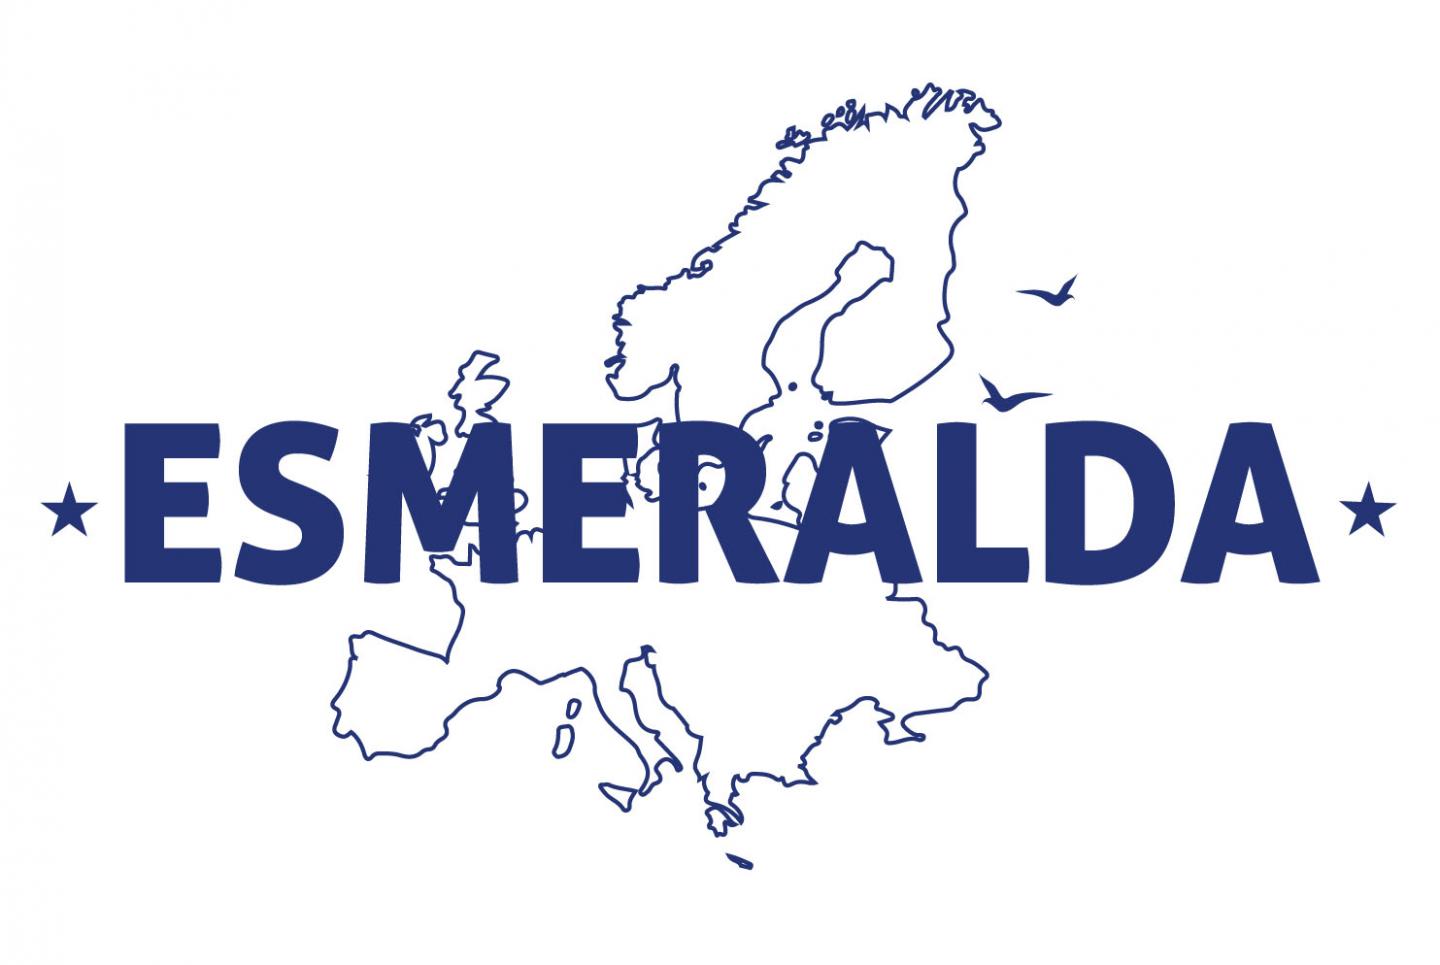 ESMERALDA Logo